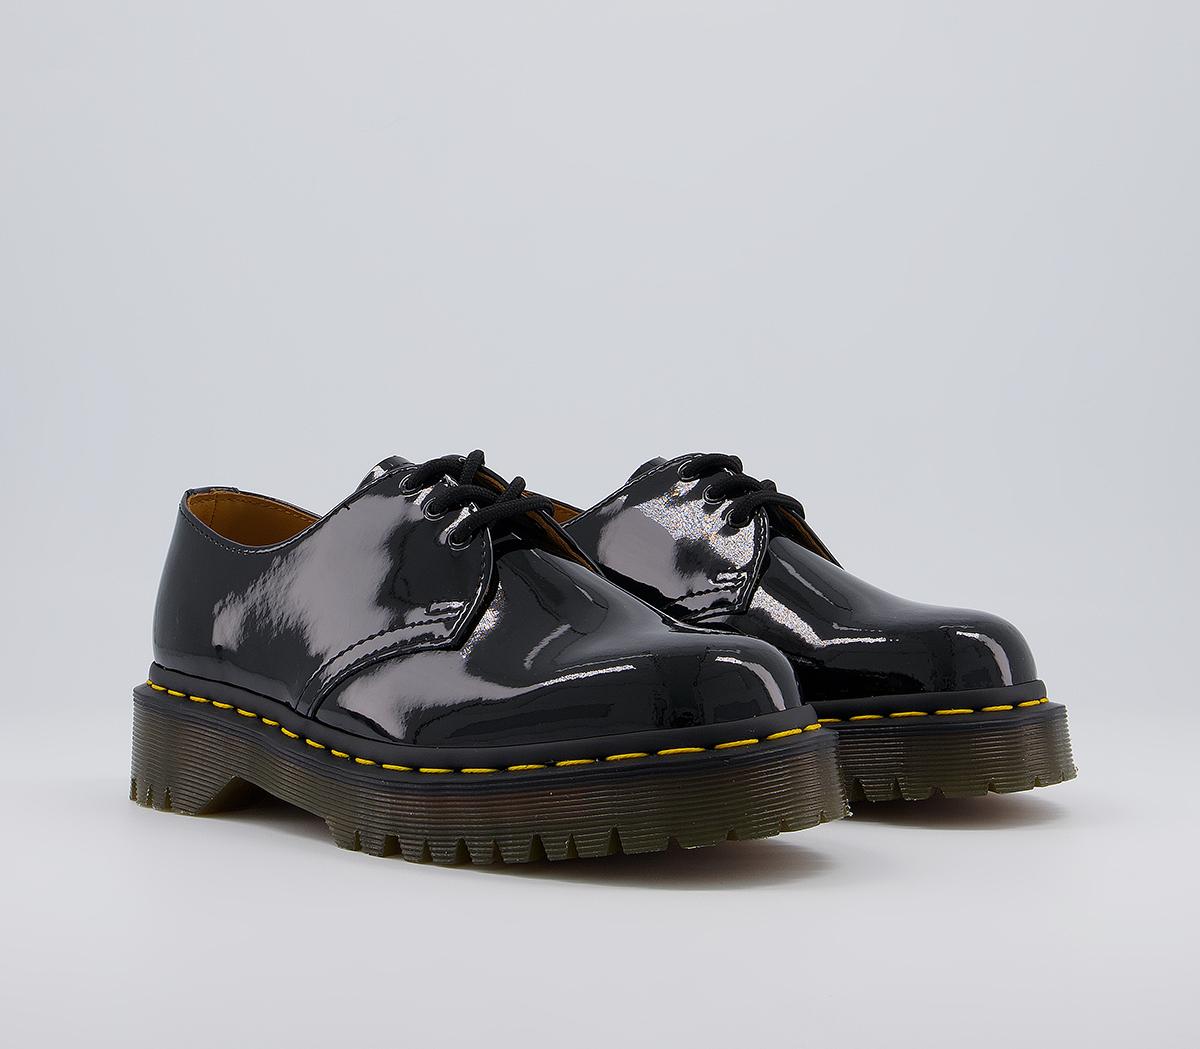 Dr. Martens Bex Shoes Black Patent - Flat Shoes for Women